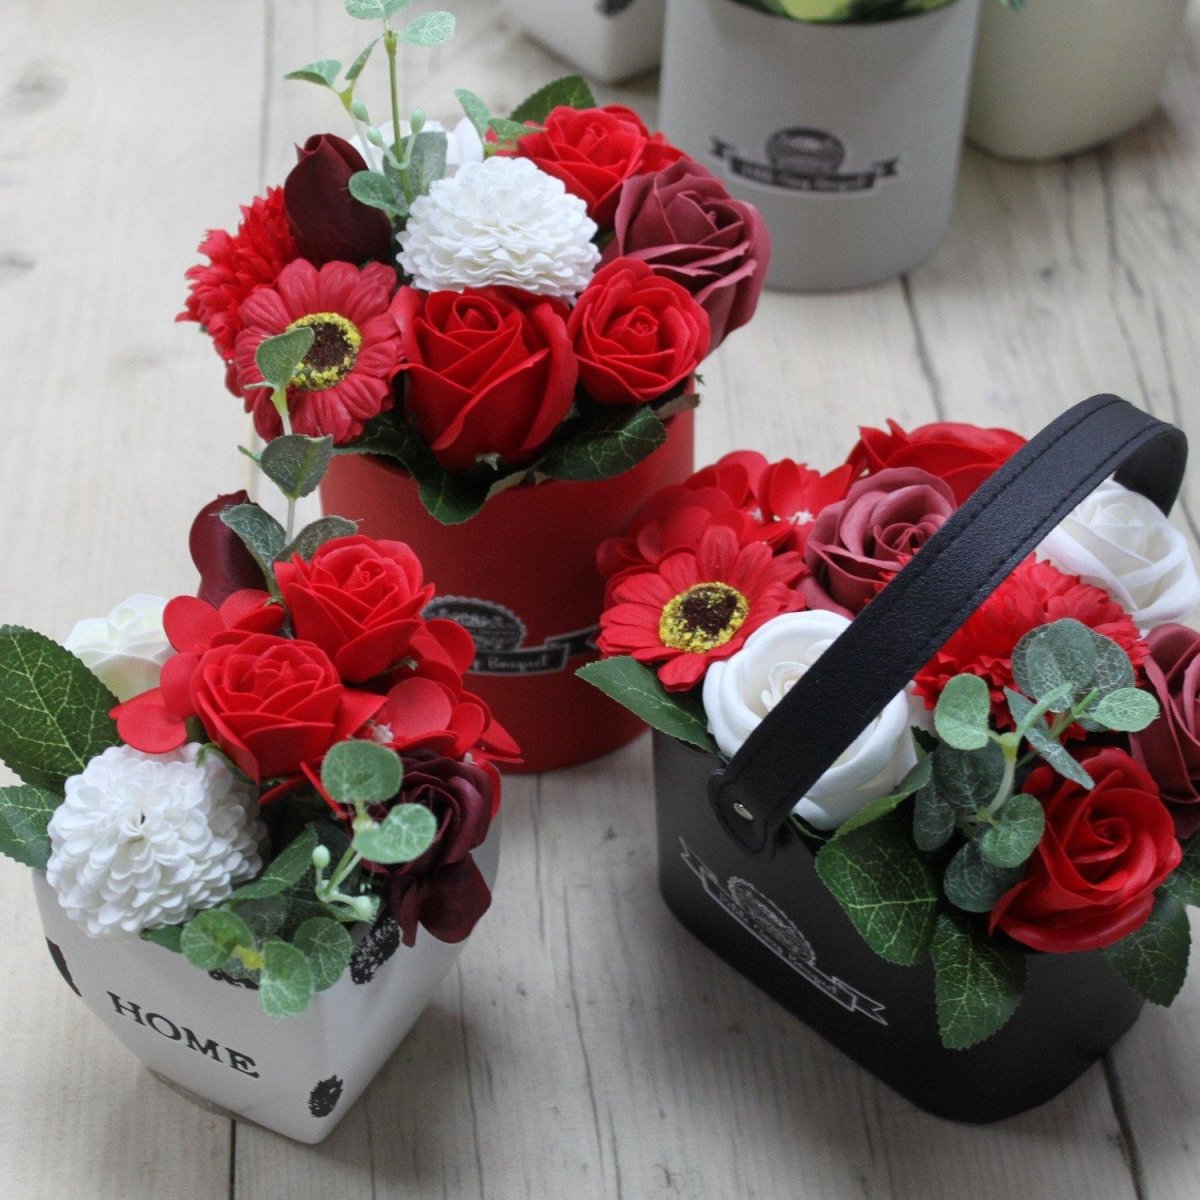 Rojo pequeño - Cesto de flores - Regalos originales personalizados - DE MOI À TOI |DMAT